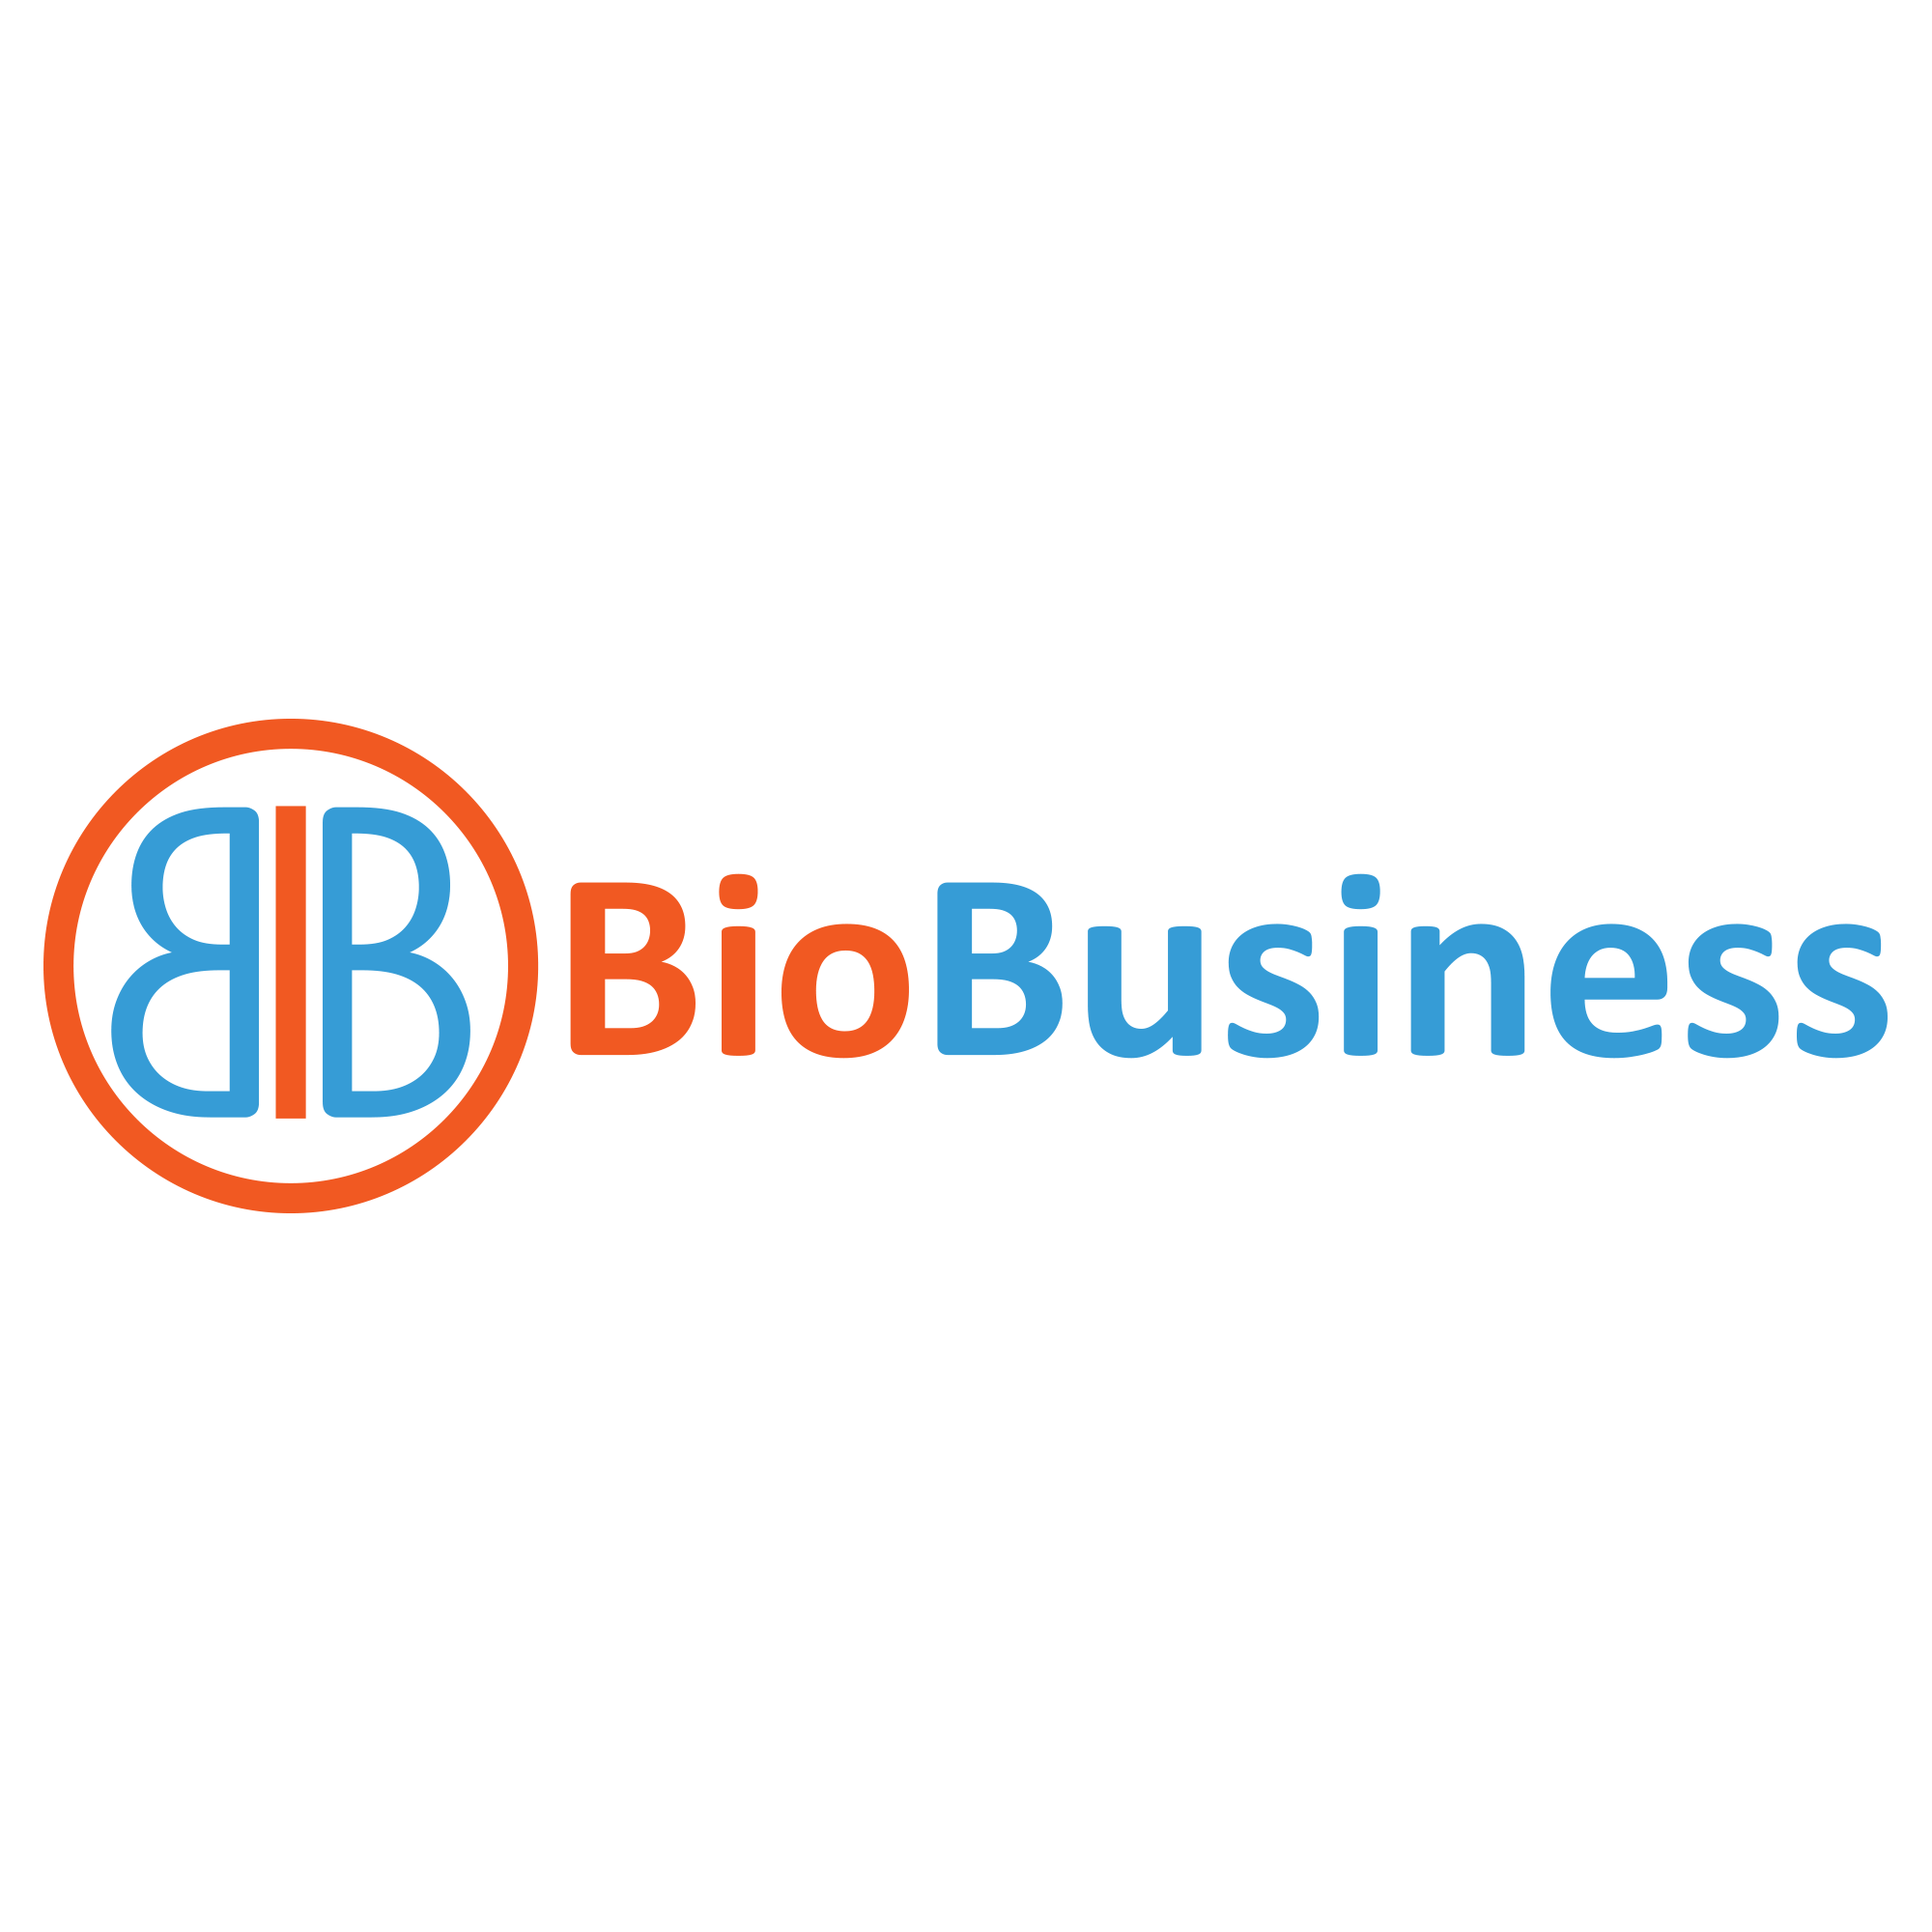 BioBusiness